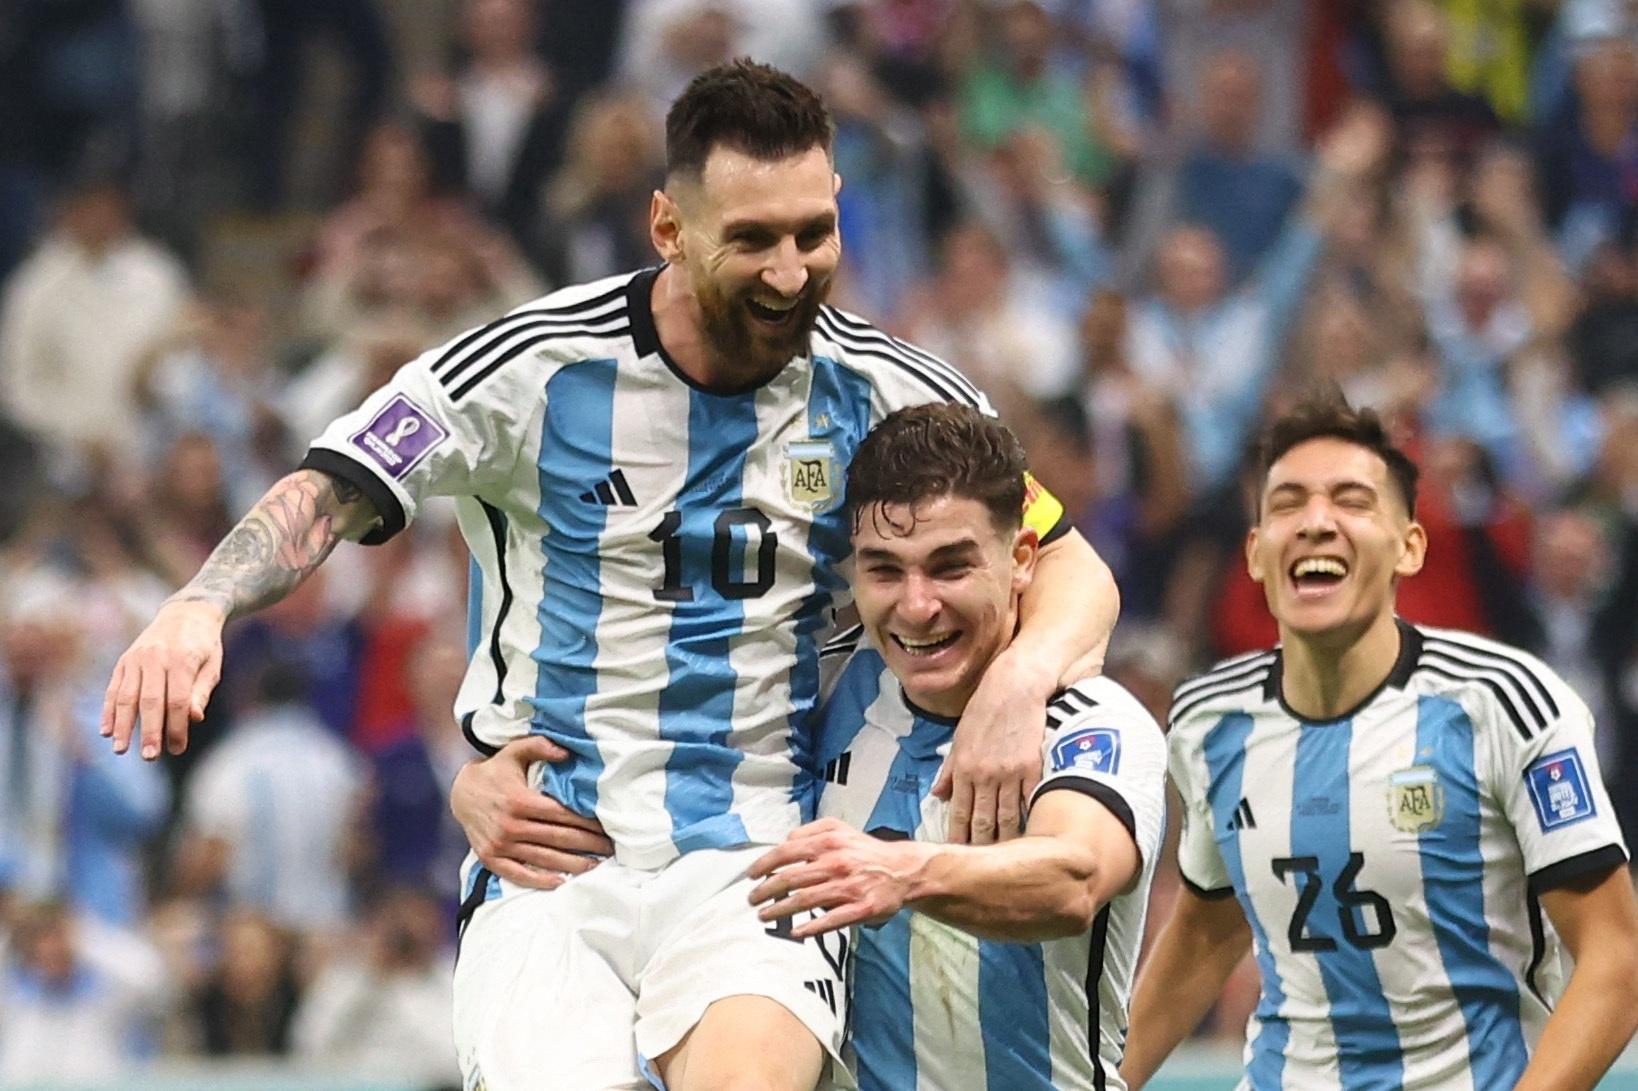 Argentina espera jogo difícil contra Croácia na disputa por vaga na final  da Copa 